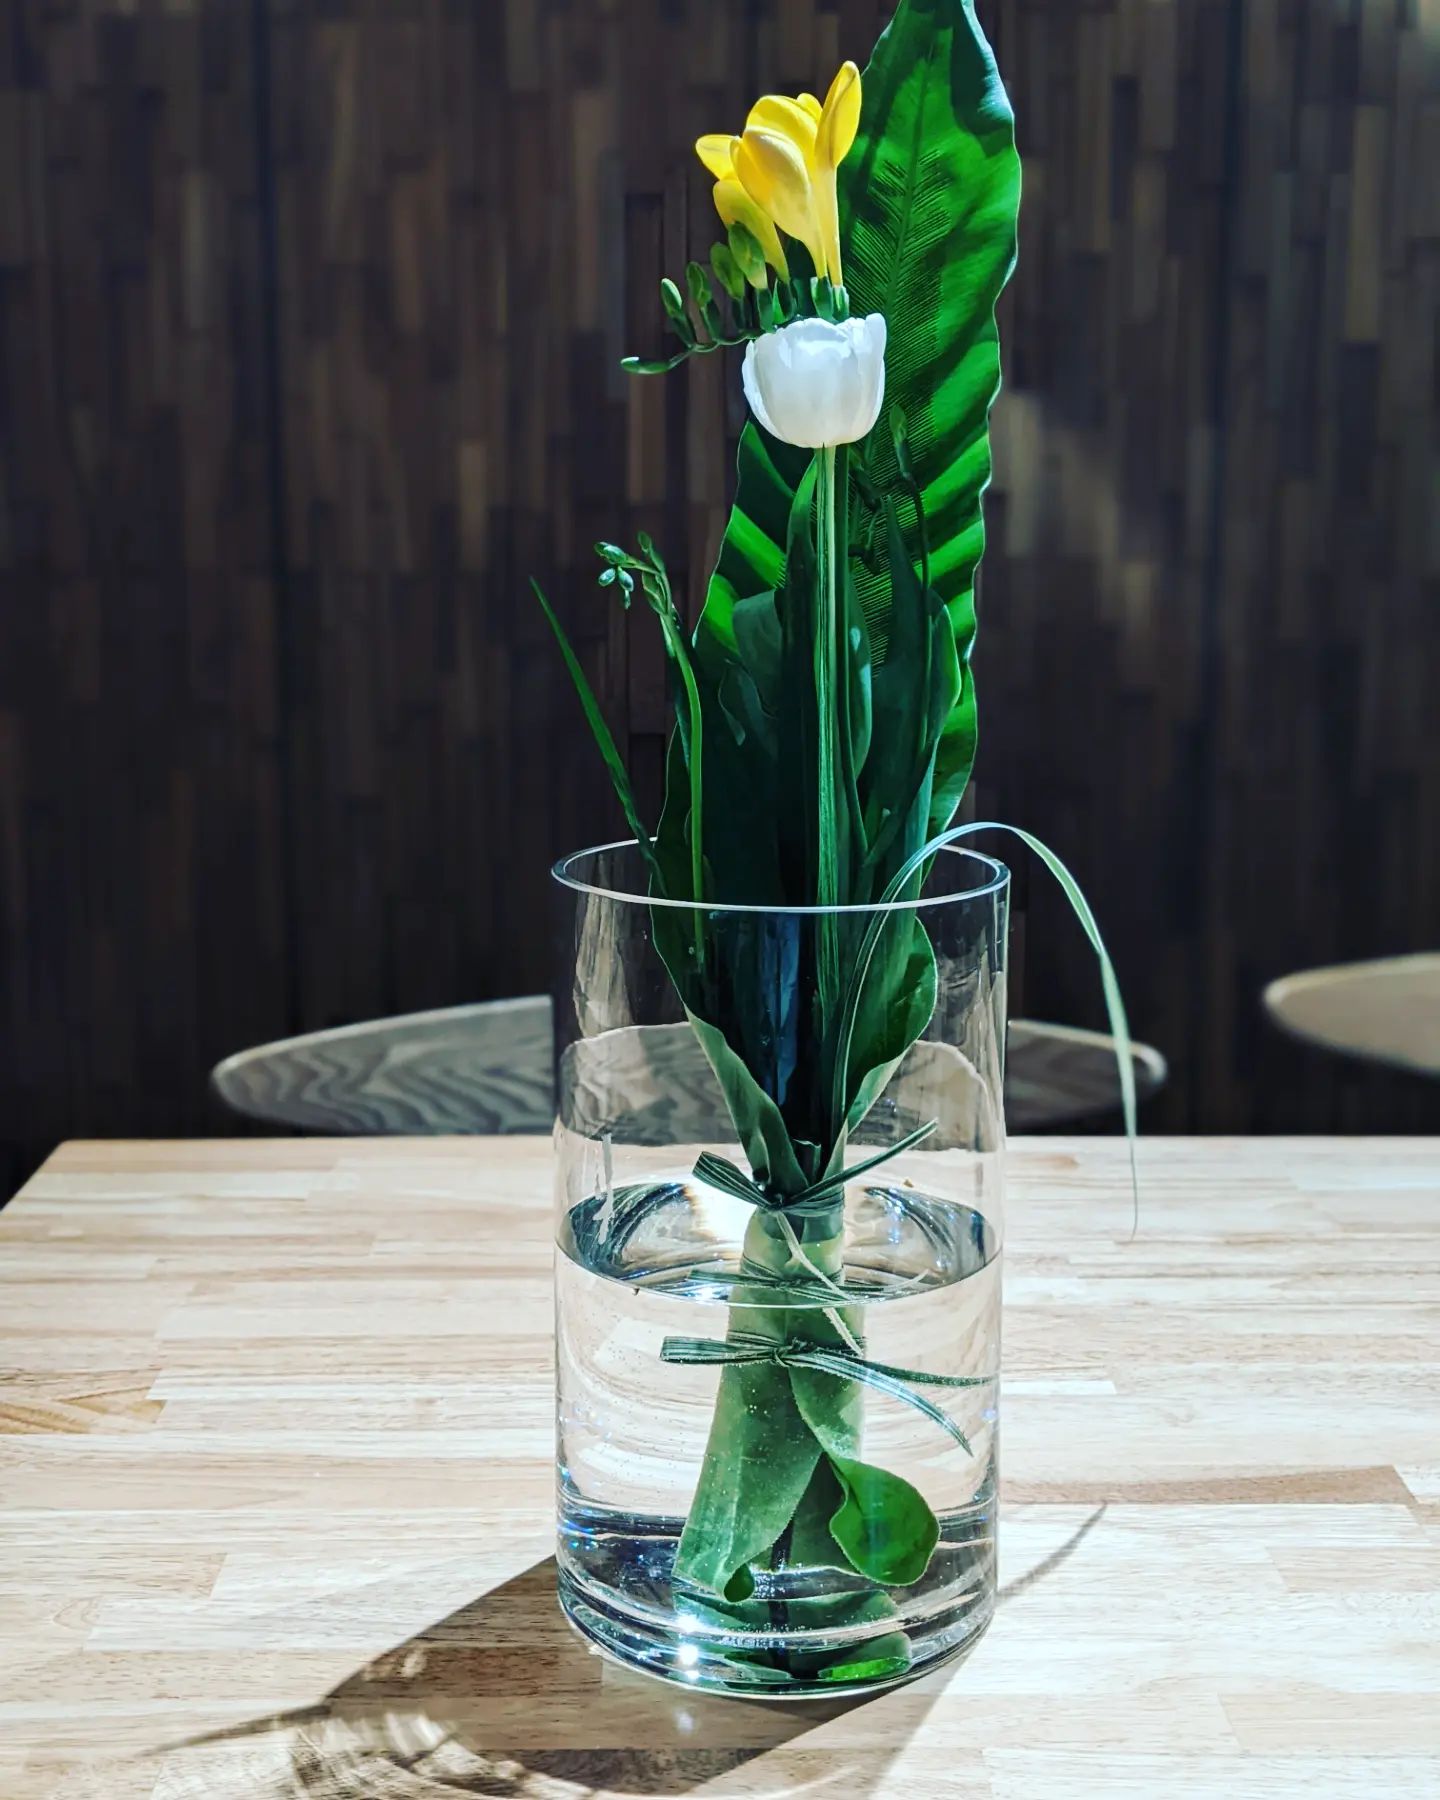 思いがけずお客様からお花をいただきましたフリージアとチューリップが大きな葉に包まれてあって🥰足元も素敵なのでガラスのフラワーベースへ生けてみましたちょっと心がざわつく日々が続くなかお客様の思ってくださるお気持ちとお花から癒やしをいただいてとても嬉しかったですありがとうございます (Instagram)